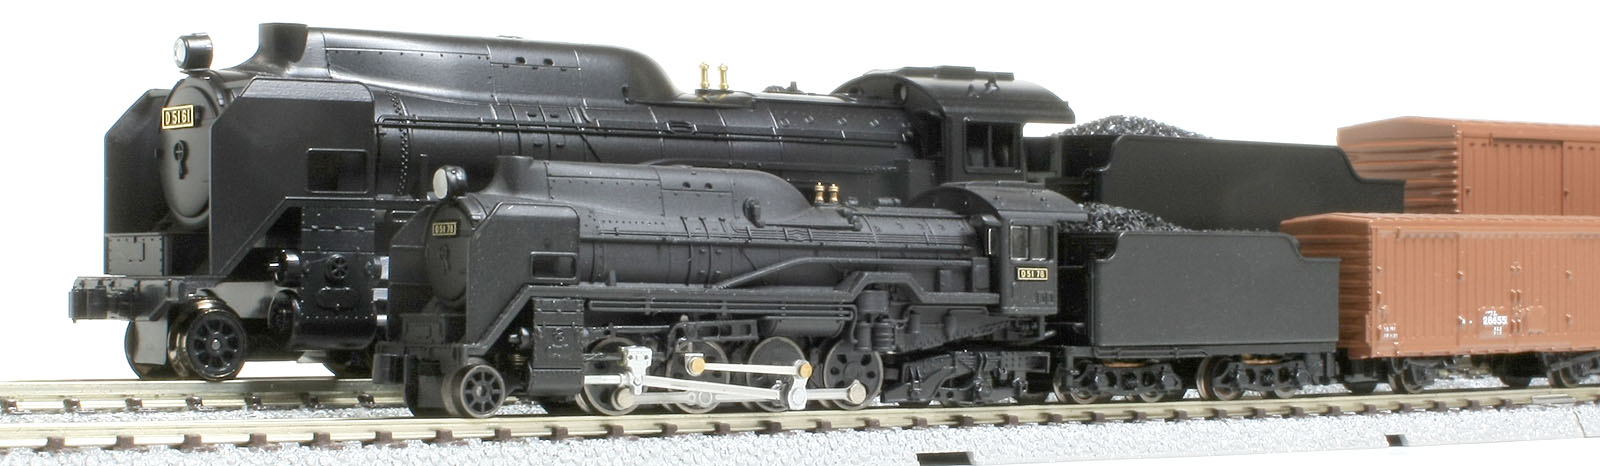 Ｎゲージ蒸気機関車－2009年のメモ